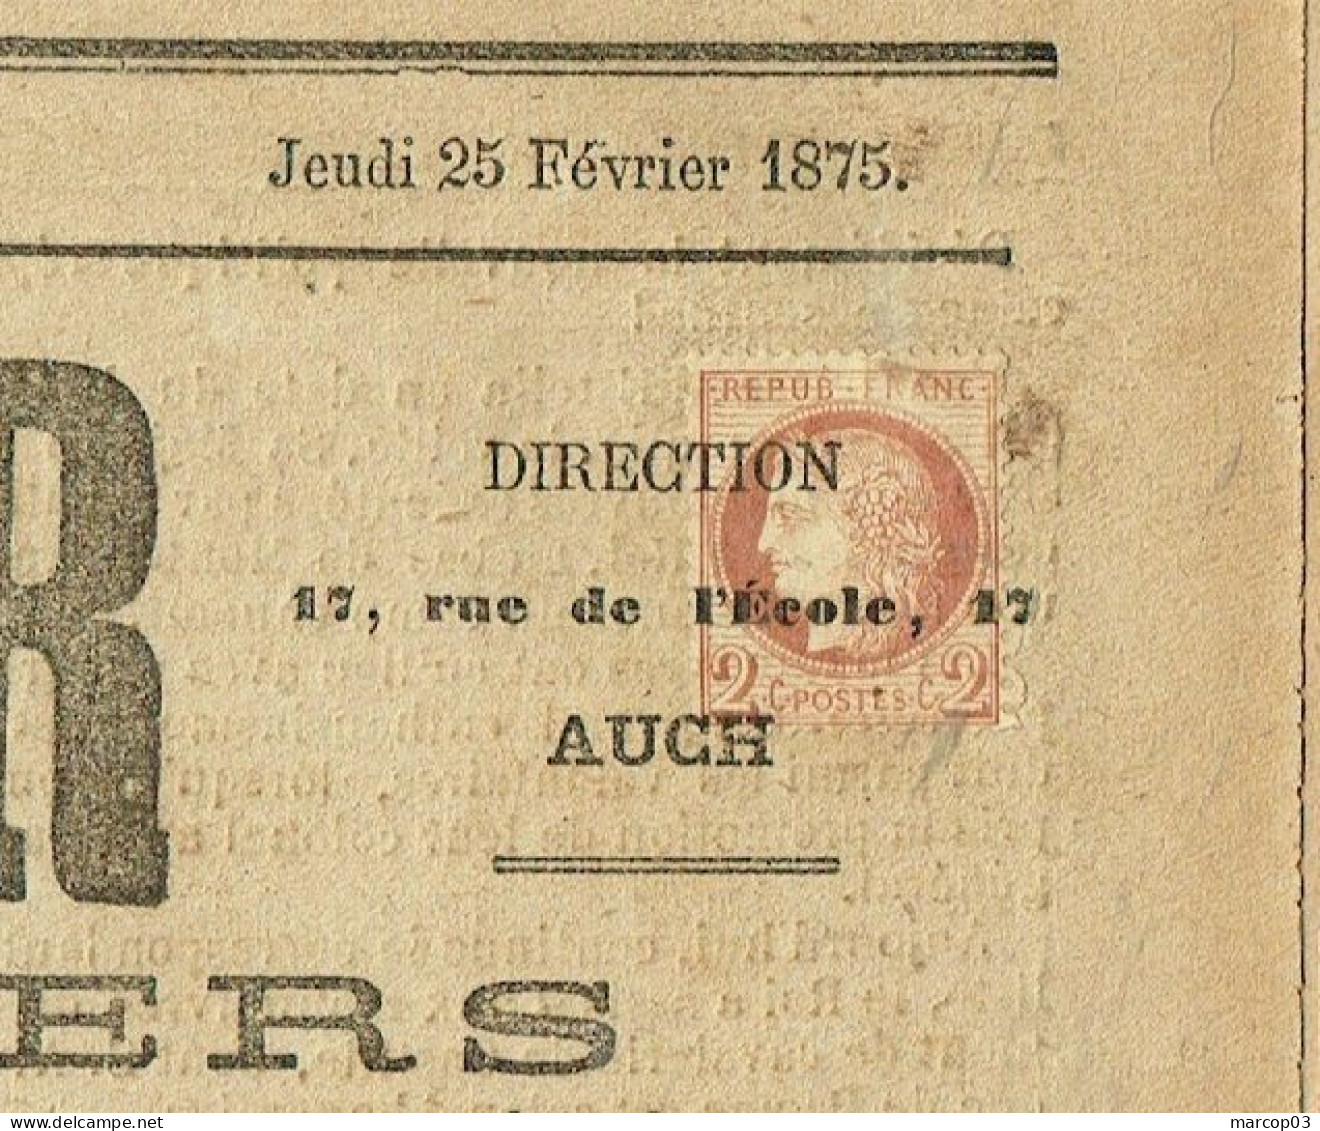 32 GERS Journal Le Conservateur Du 25/02/1875 2 C Cérès N° 51 Obl Typo Journal Complet TTB - Kranten